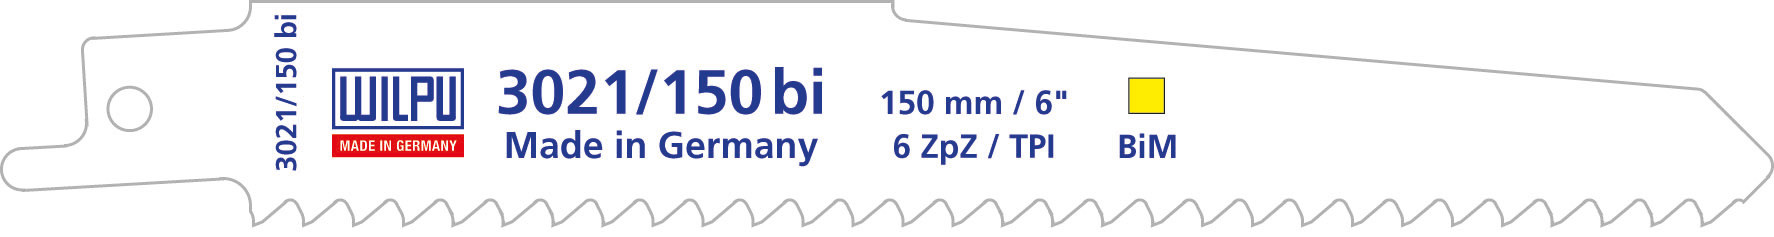 WILPU Bajonetsavklinge 3021/150 bi-metal til træ og plast - 5 styk (1226500005)